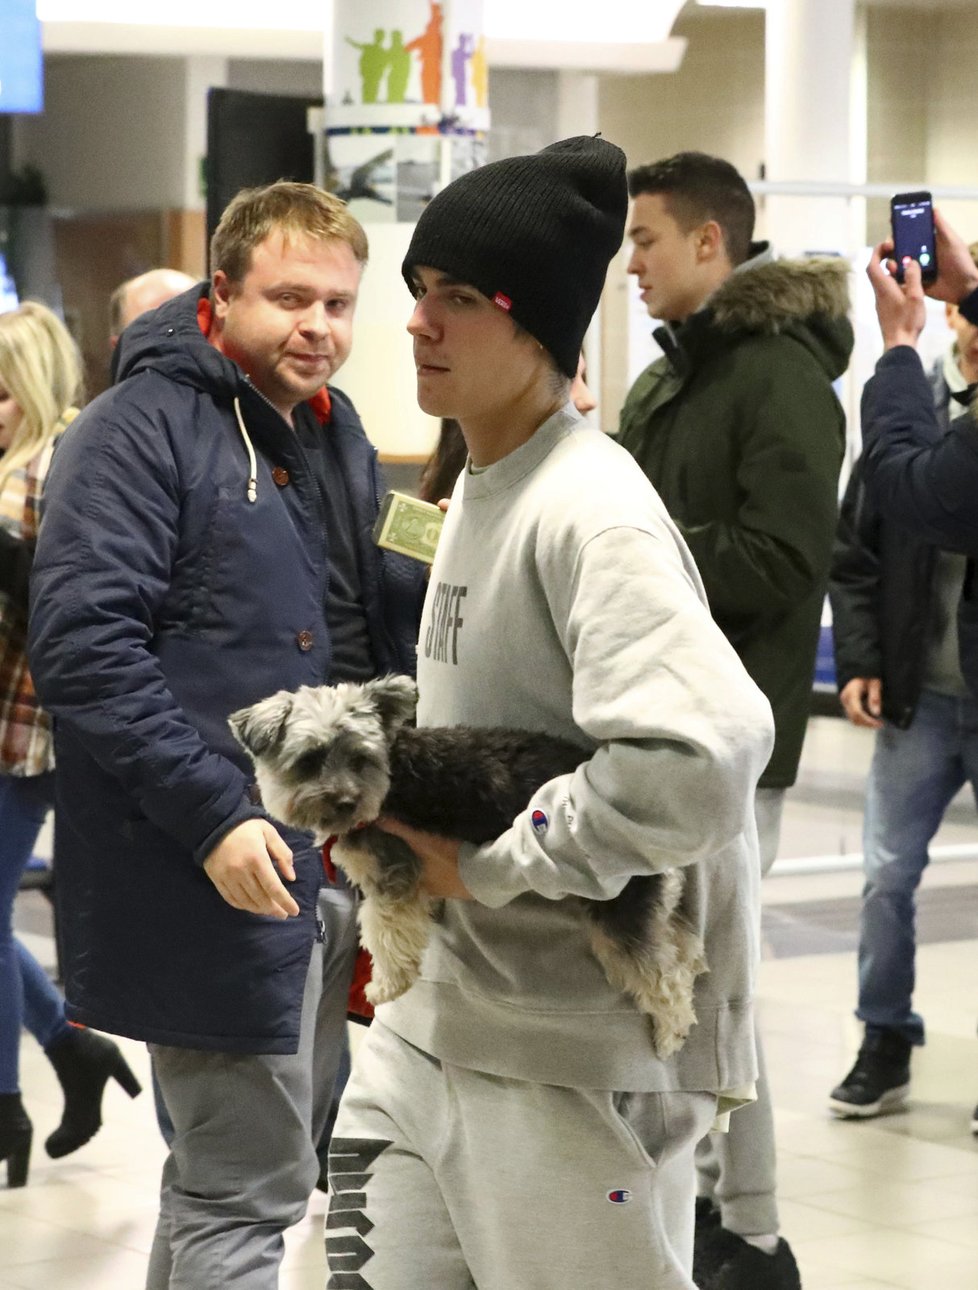 Justin si sebou do Prahy přivezl i psího kamaráda